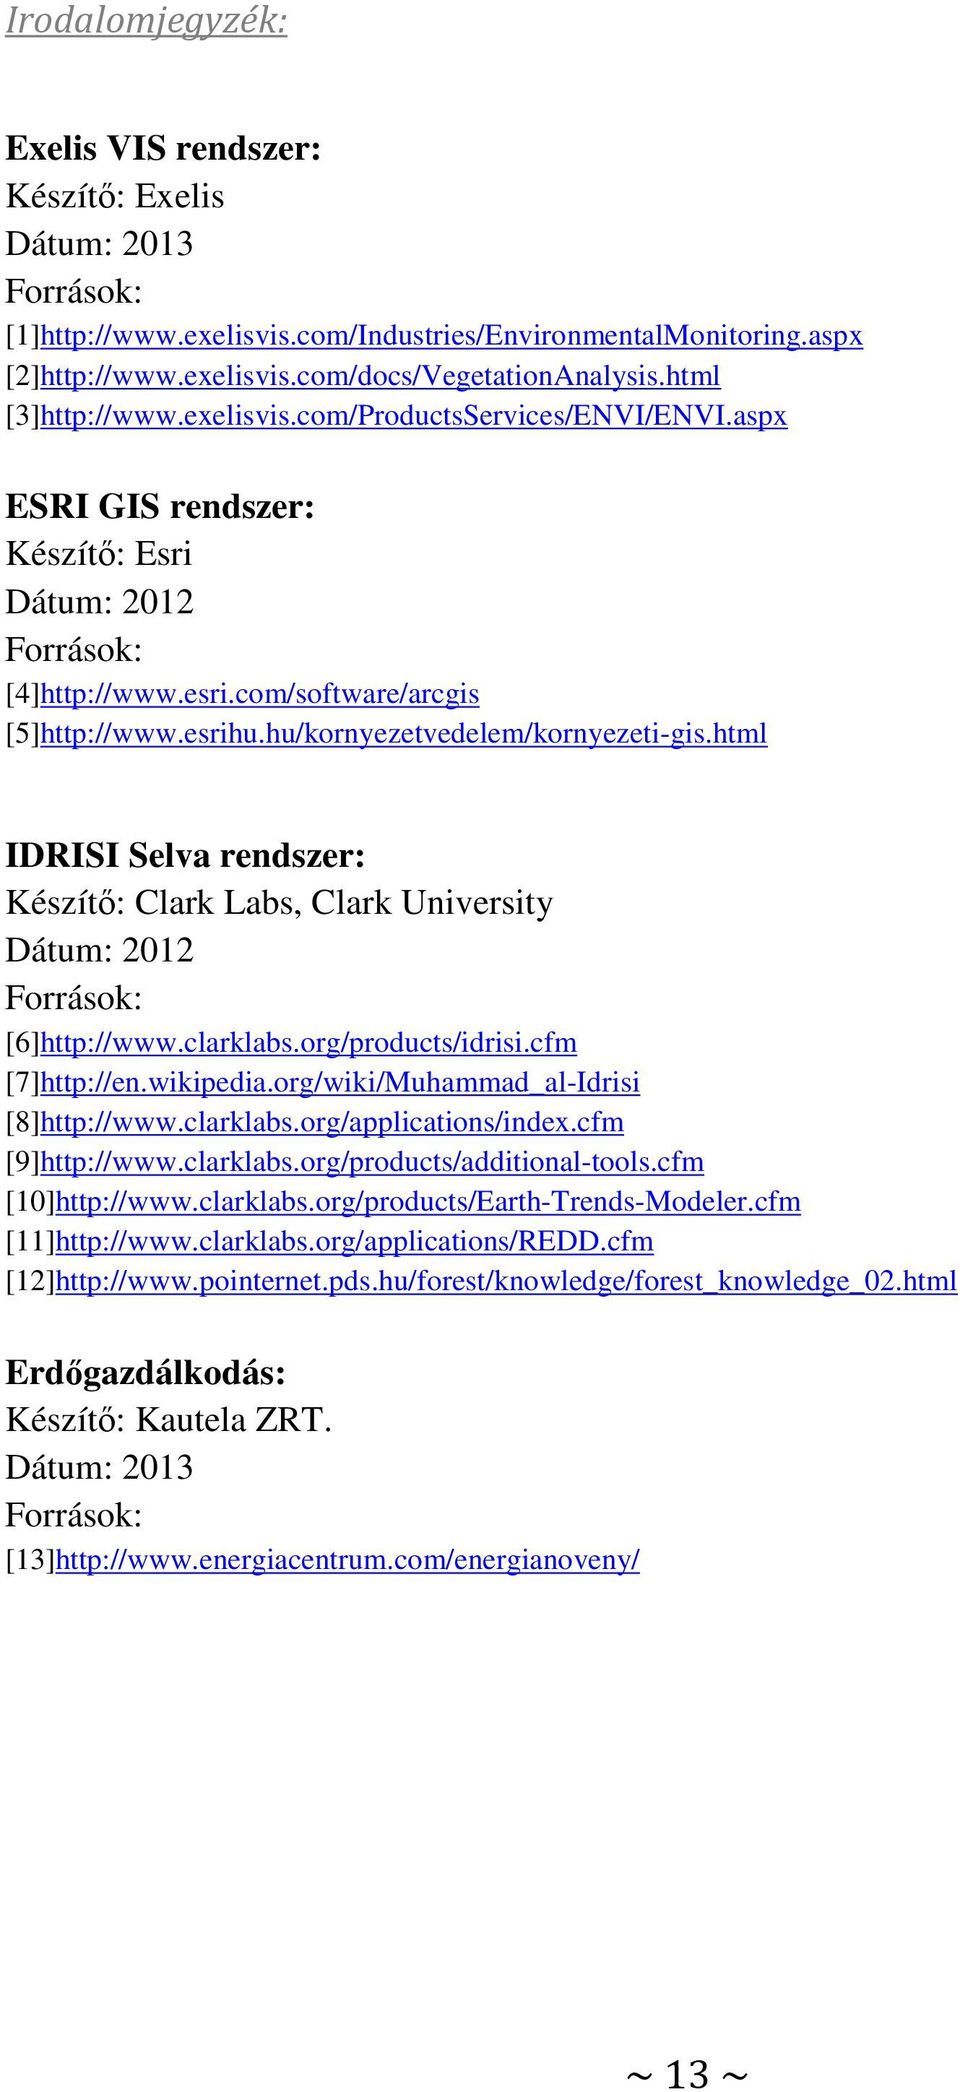 hu/kornyezetvedelem/kornyezeti-gis.html IDRISI Selva rendszer: Clark Labs, Clark University Dátum: 2012 Források: [6]http://www.clarklabs.org/products/idrisi.cfm [7]http://en.wikipedia.